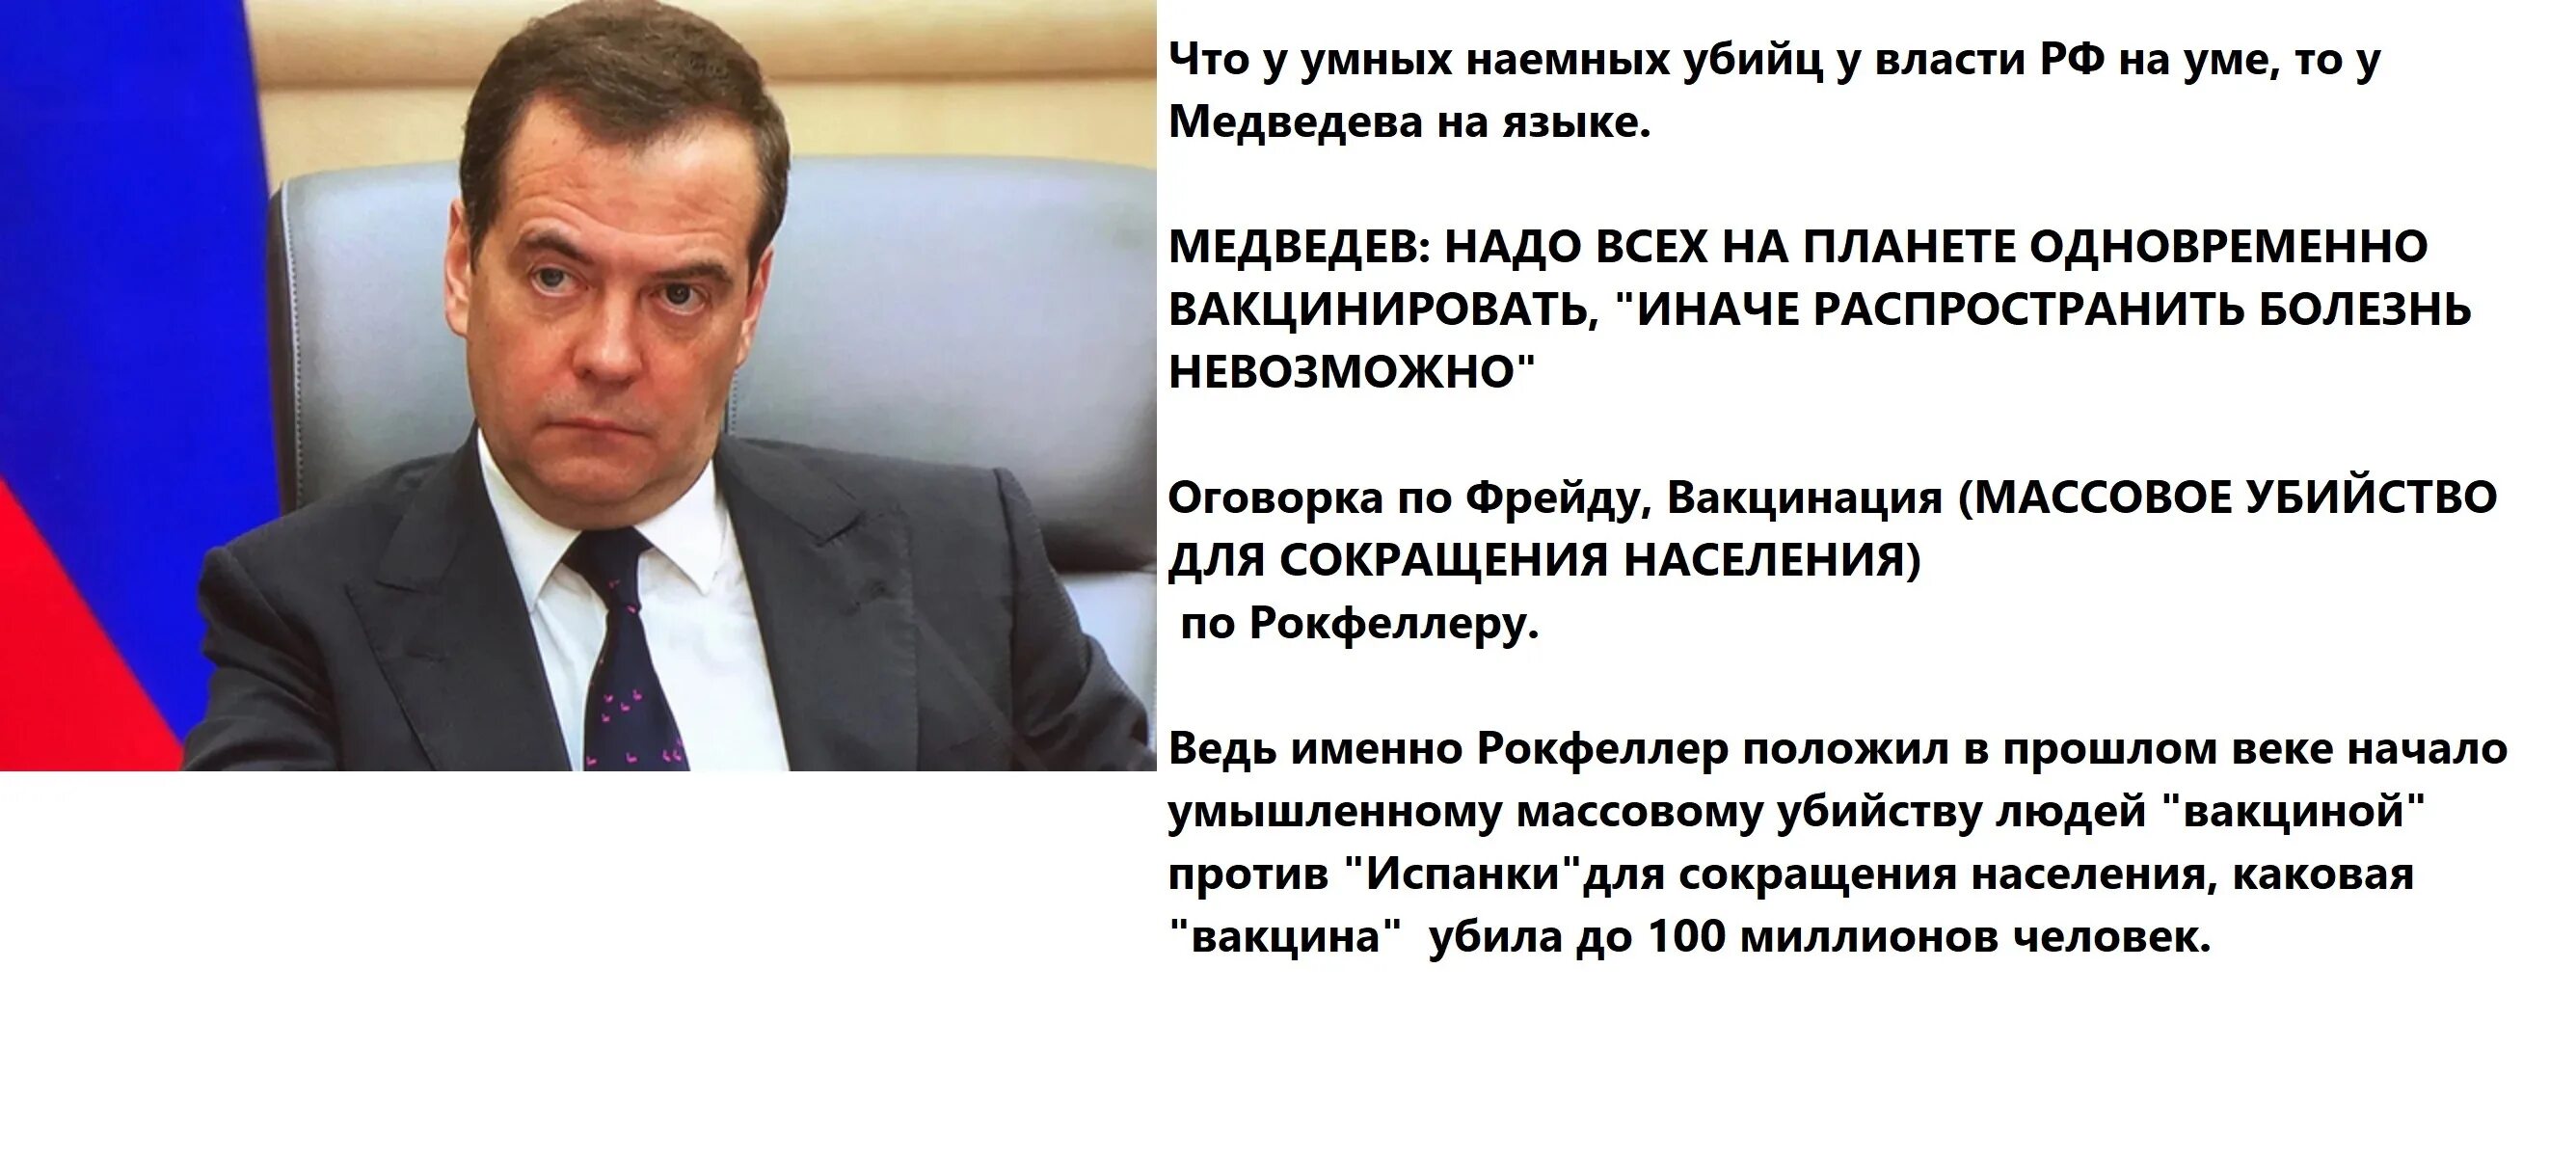 Медведев про вакцинацию оговорился. Медведев о вакцинации. Высказывания д Медведева. Медведев мы не сможем распространить болезнь. Оговорки рф